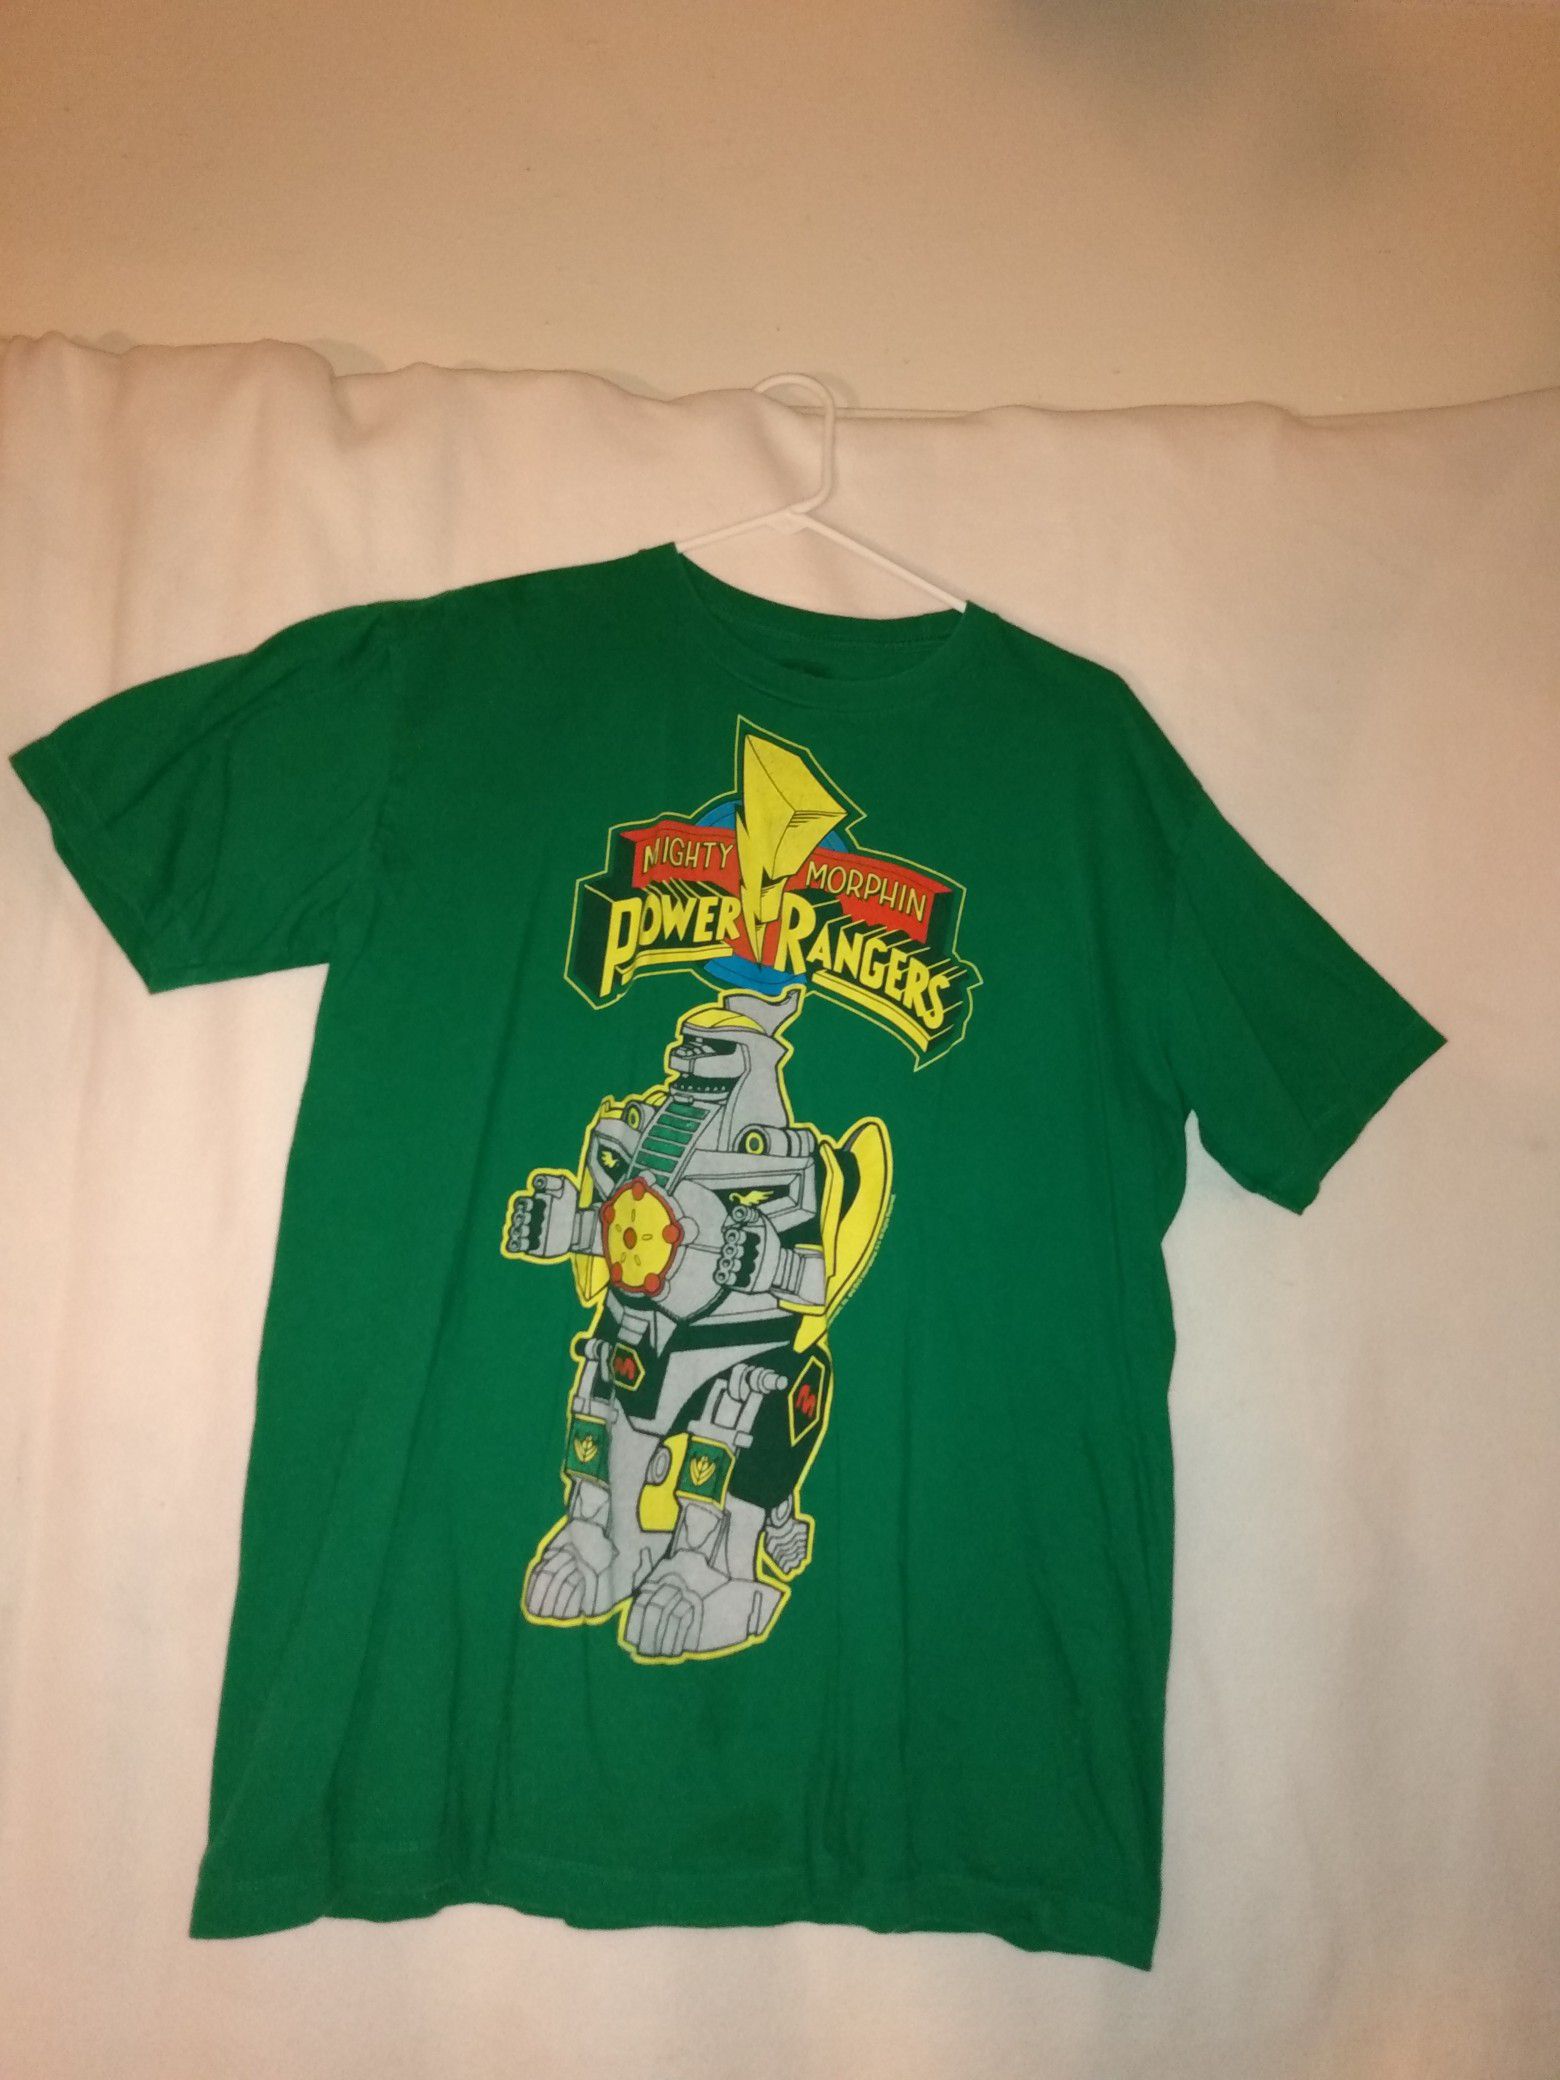 Power Rangers Adult Tee shirt size XL